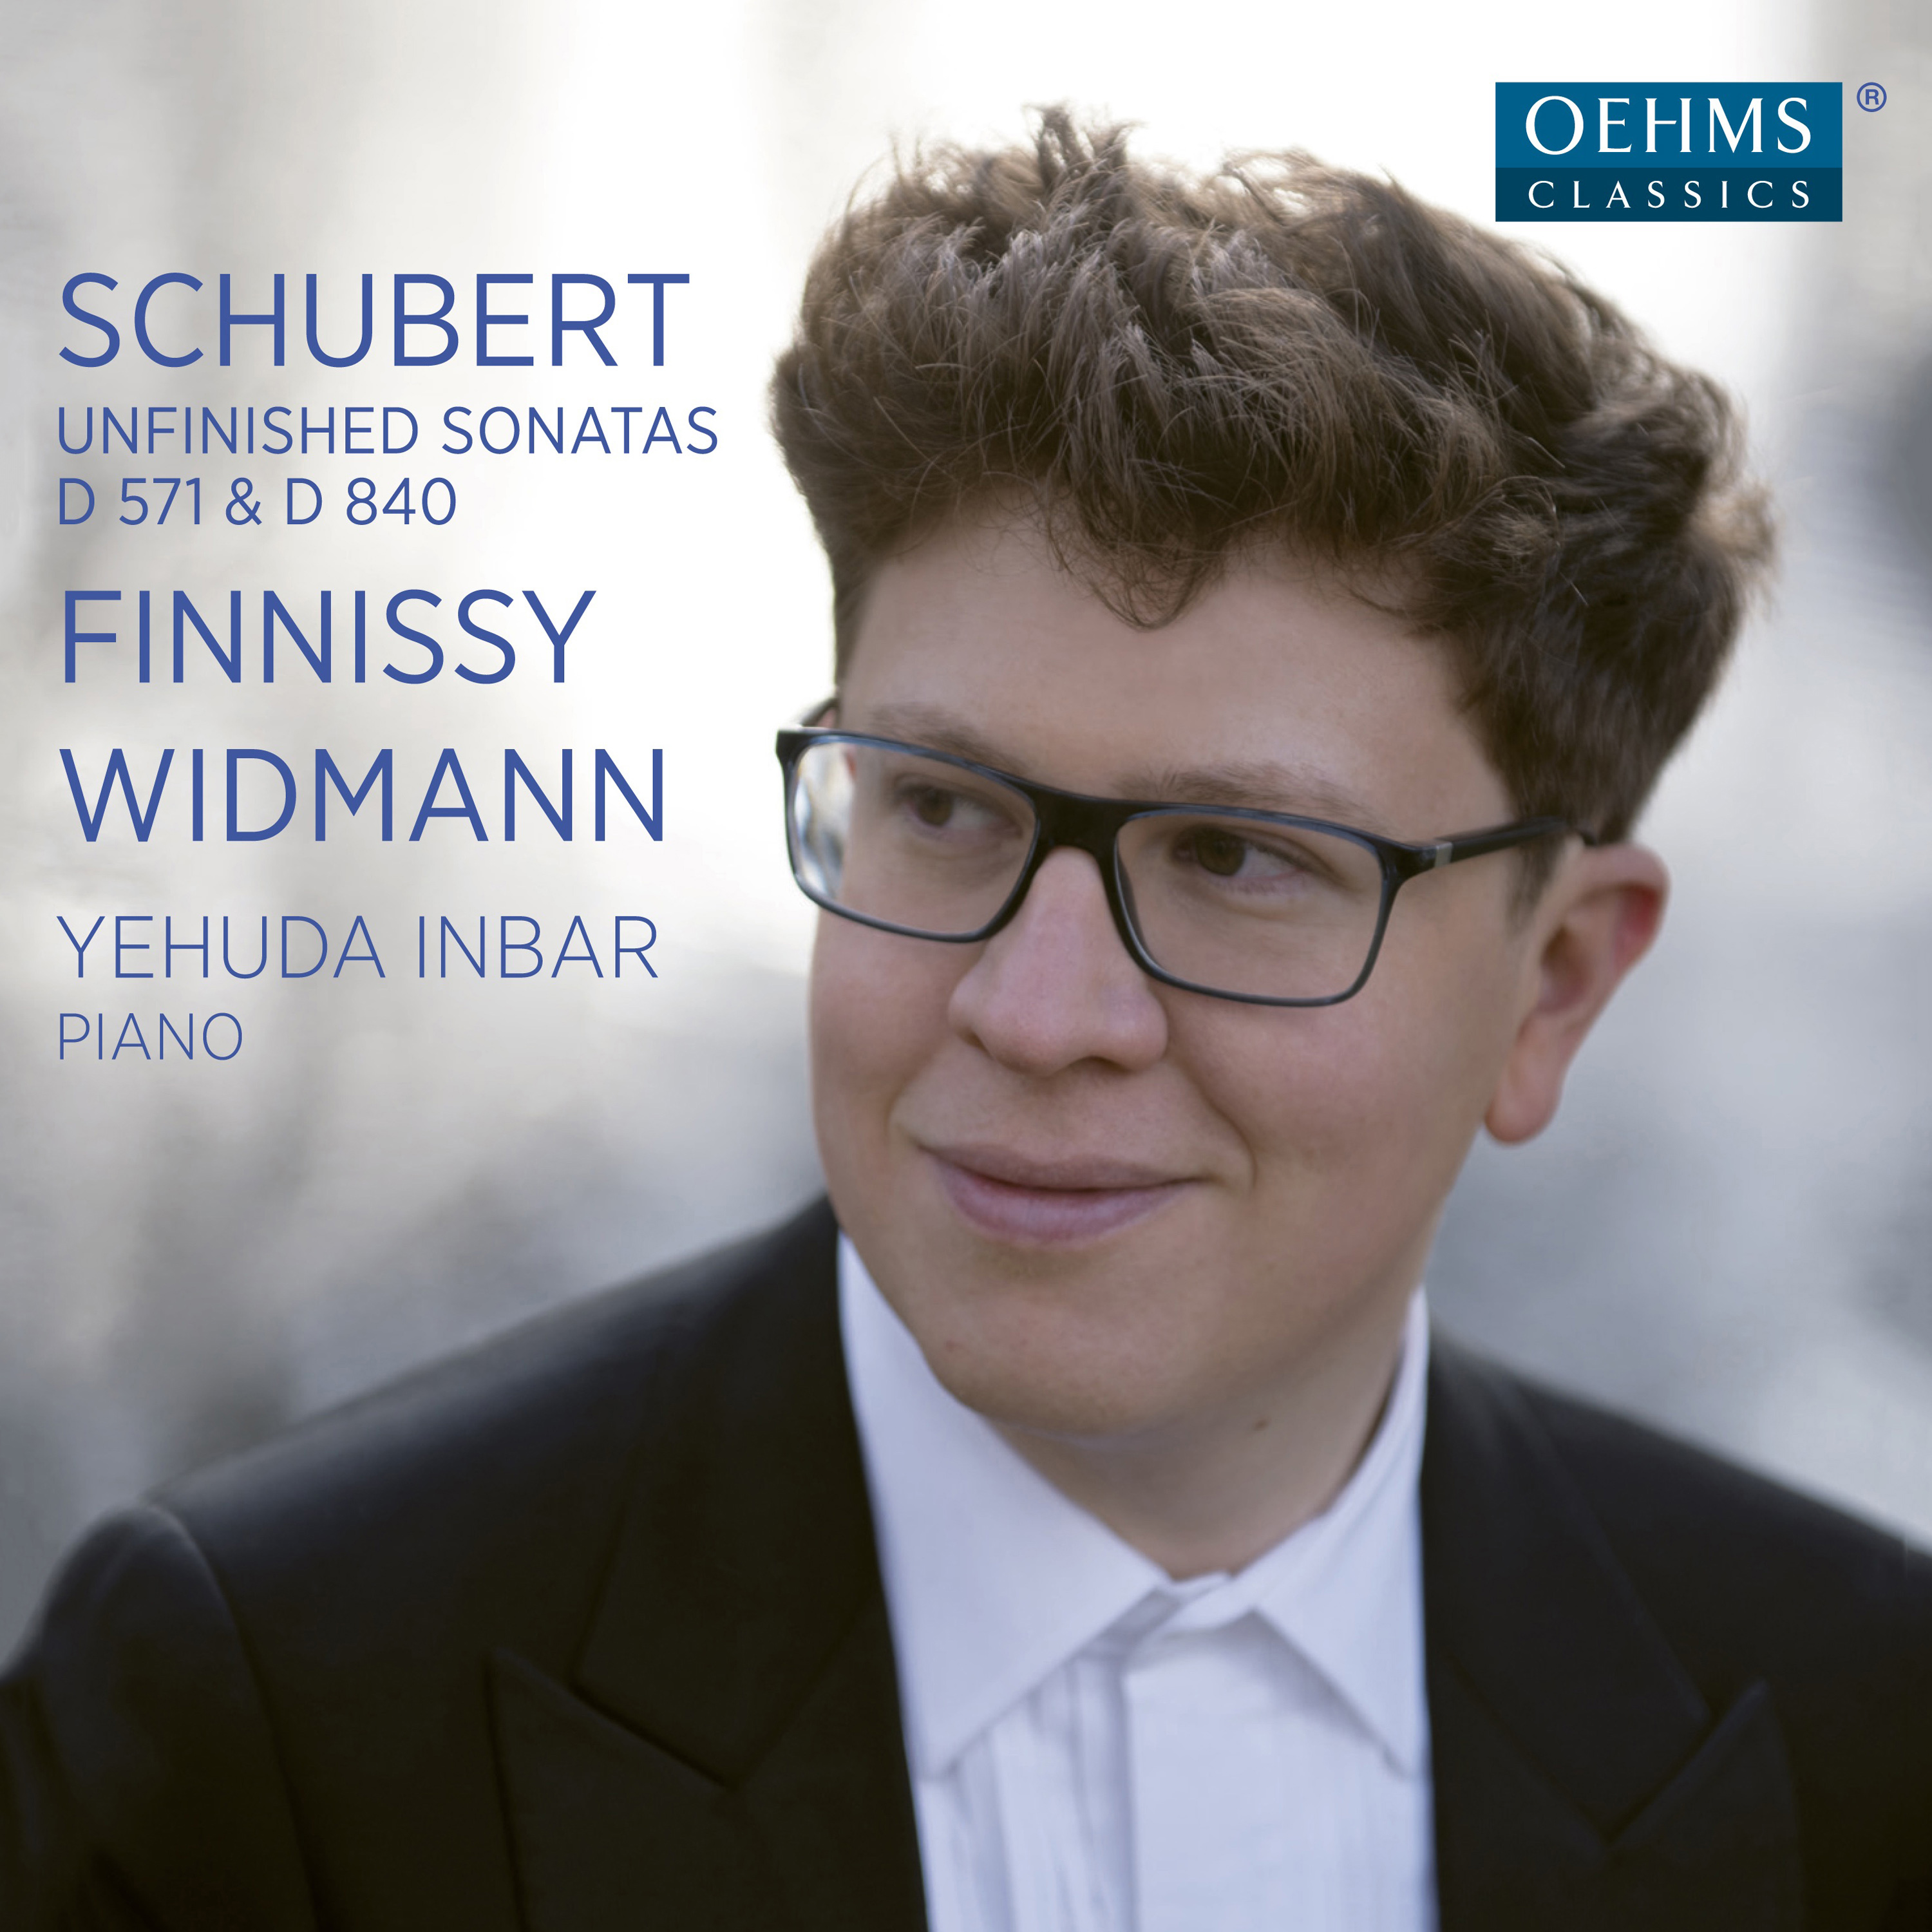 SCHUBERT, F.: Piano Sonatas Nos. 8 and 15  FINNISSY, M.: Vervollst ndigung von Schuberts D. 840  WIDMANN, J.: Idyll und Abgrund Inbar